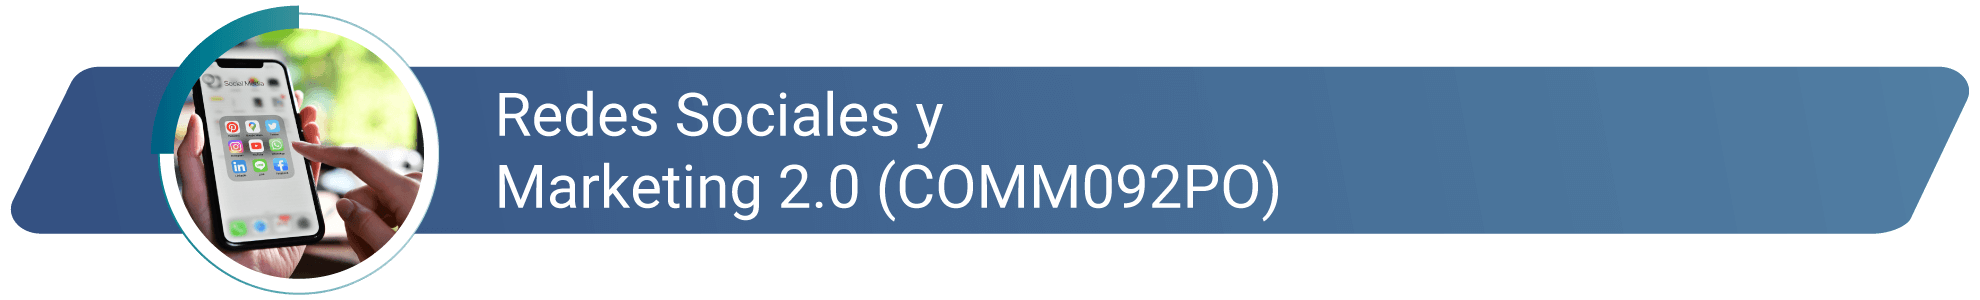 COMM092PO - Redes Sociales y marketing 2.0